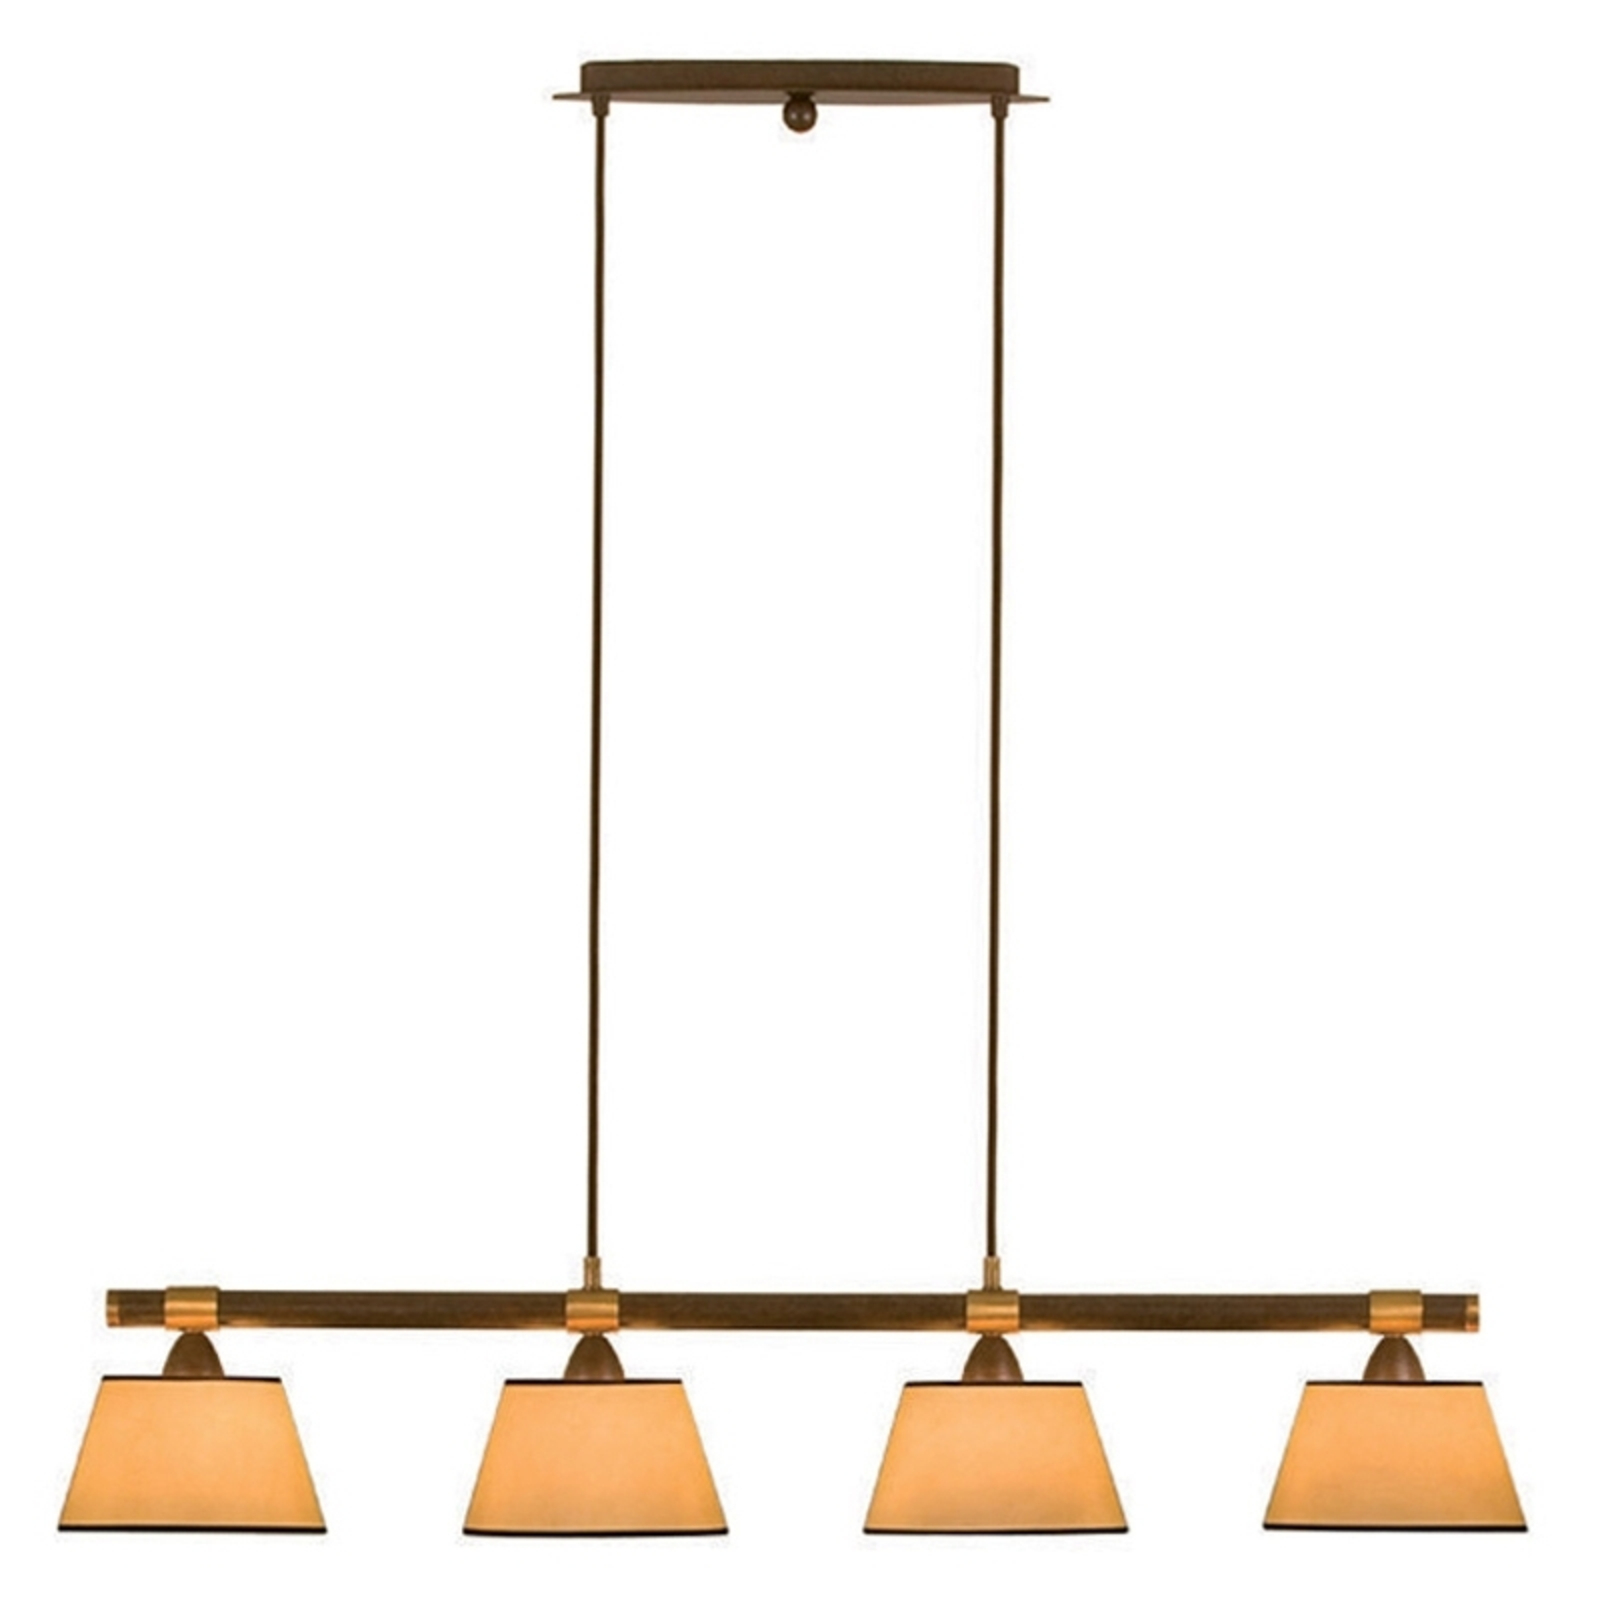 Leuke hanglamp LIVING TABLE met 4 kappen